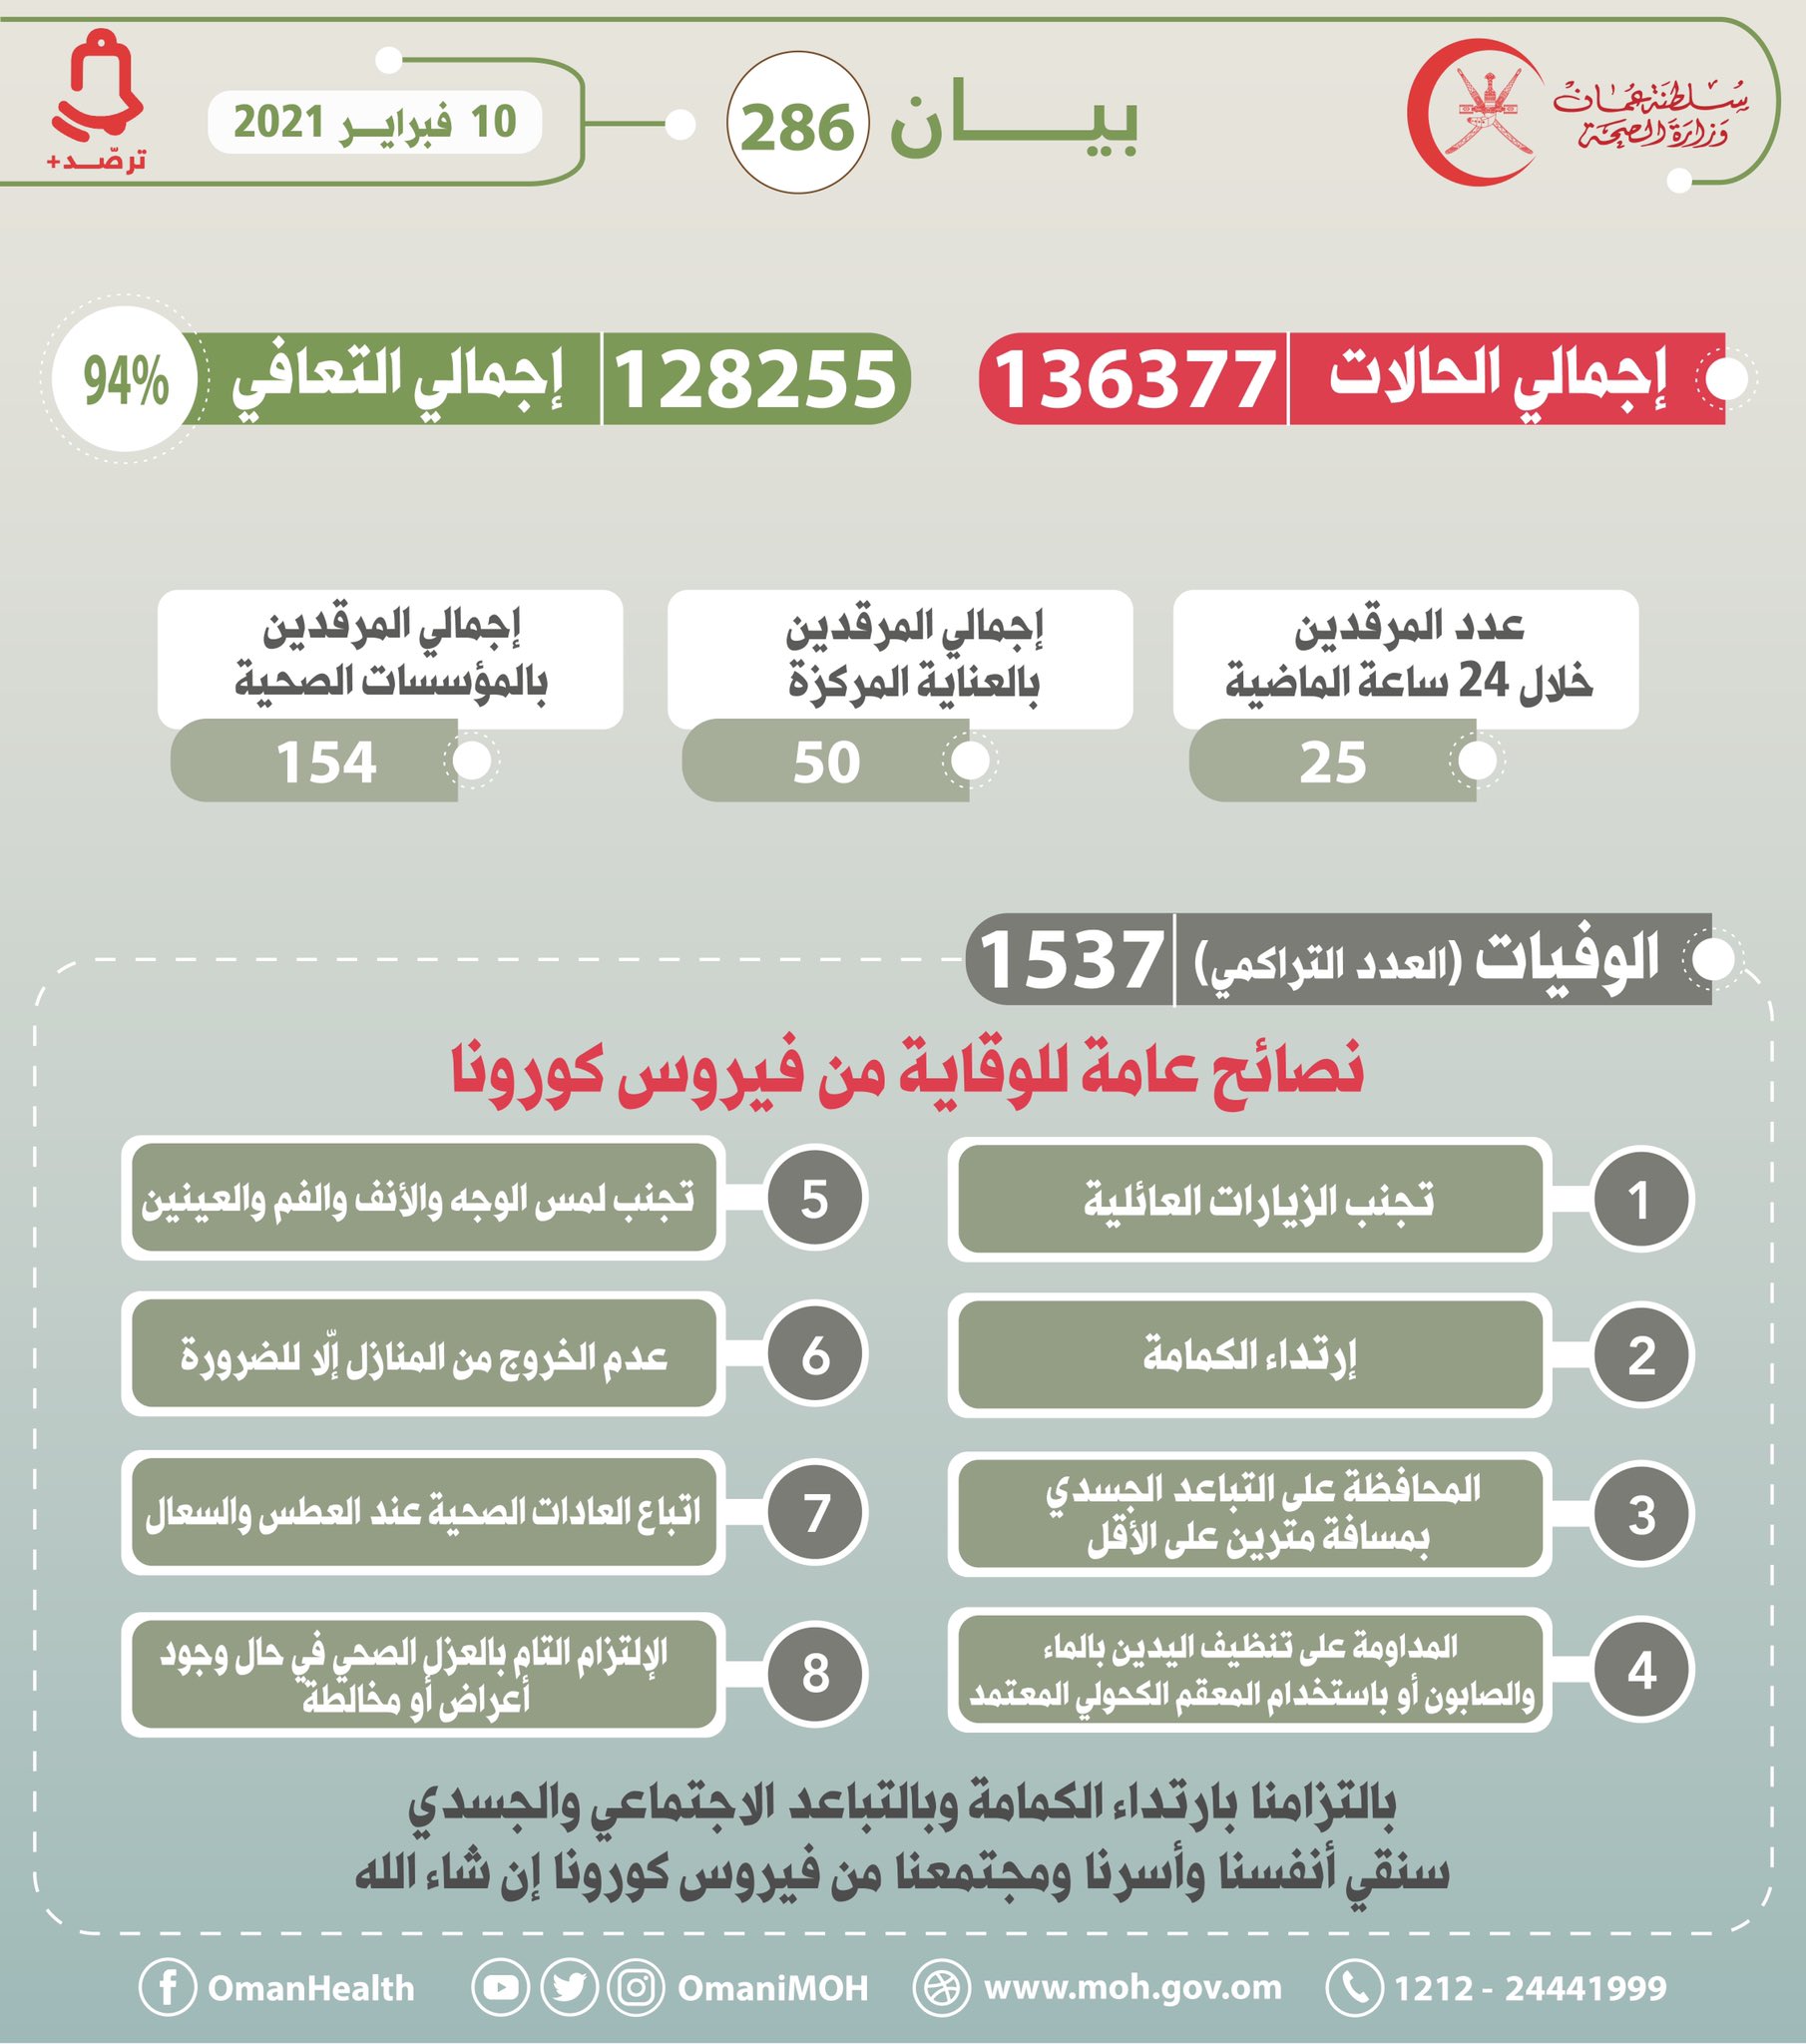 عدد حالات كورونا في عمان يرتفع لـ136377